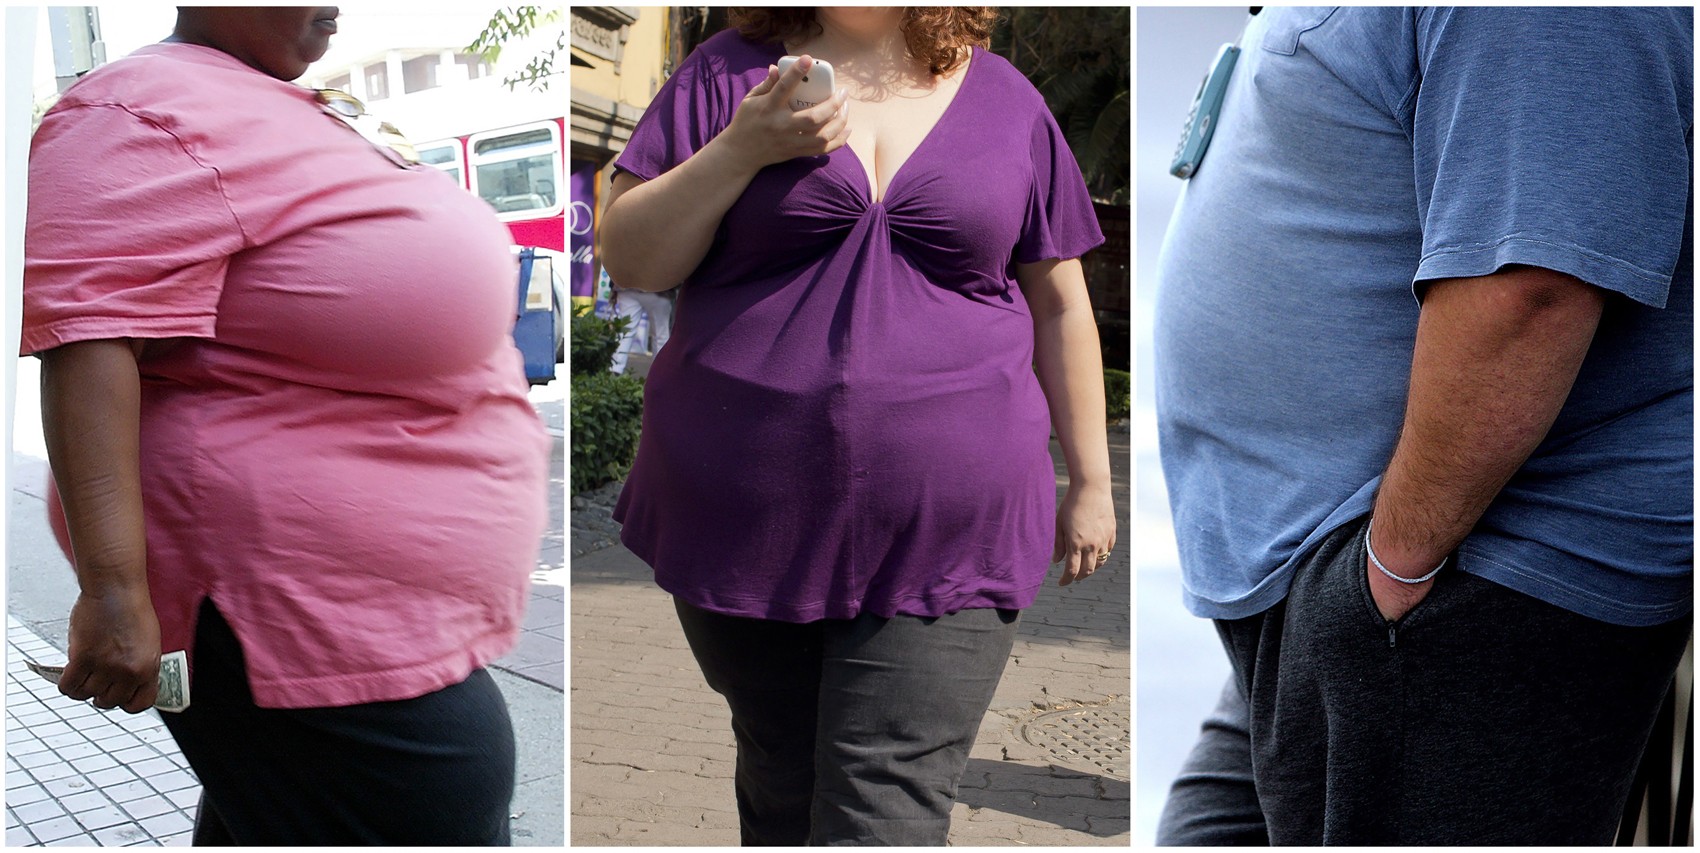   Pesquisa mostra que mais de um a cada oito adultos são obesos no mundo  (Foto: Paul ELLIS, Robyn BECK, Ronaldo SCHEMIDT / AFP Photo)